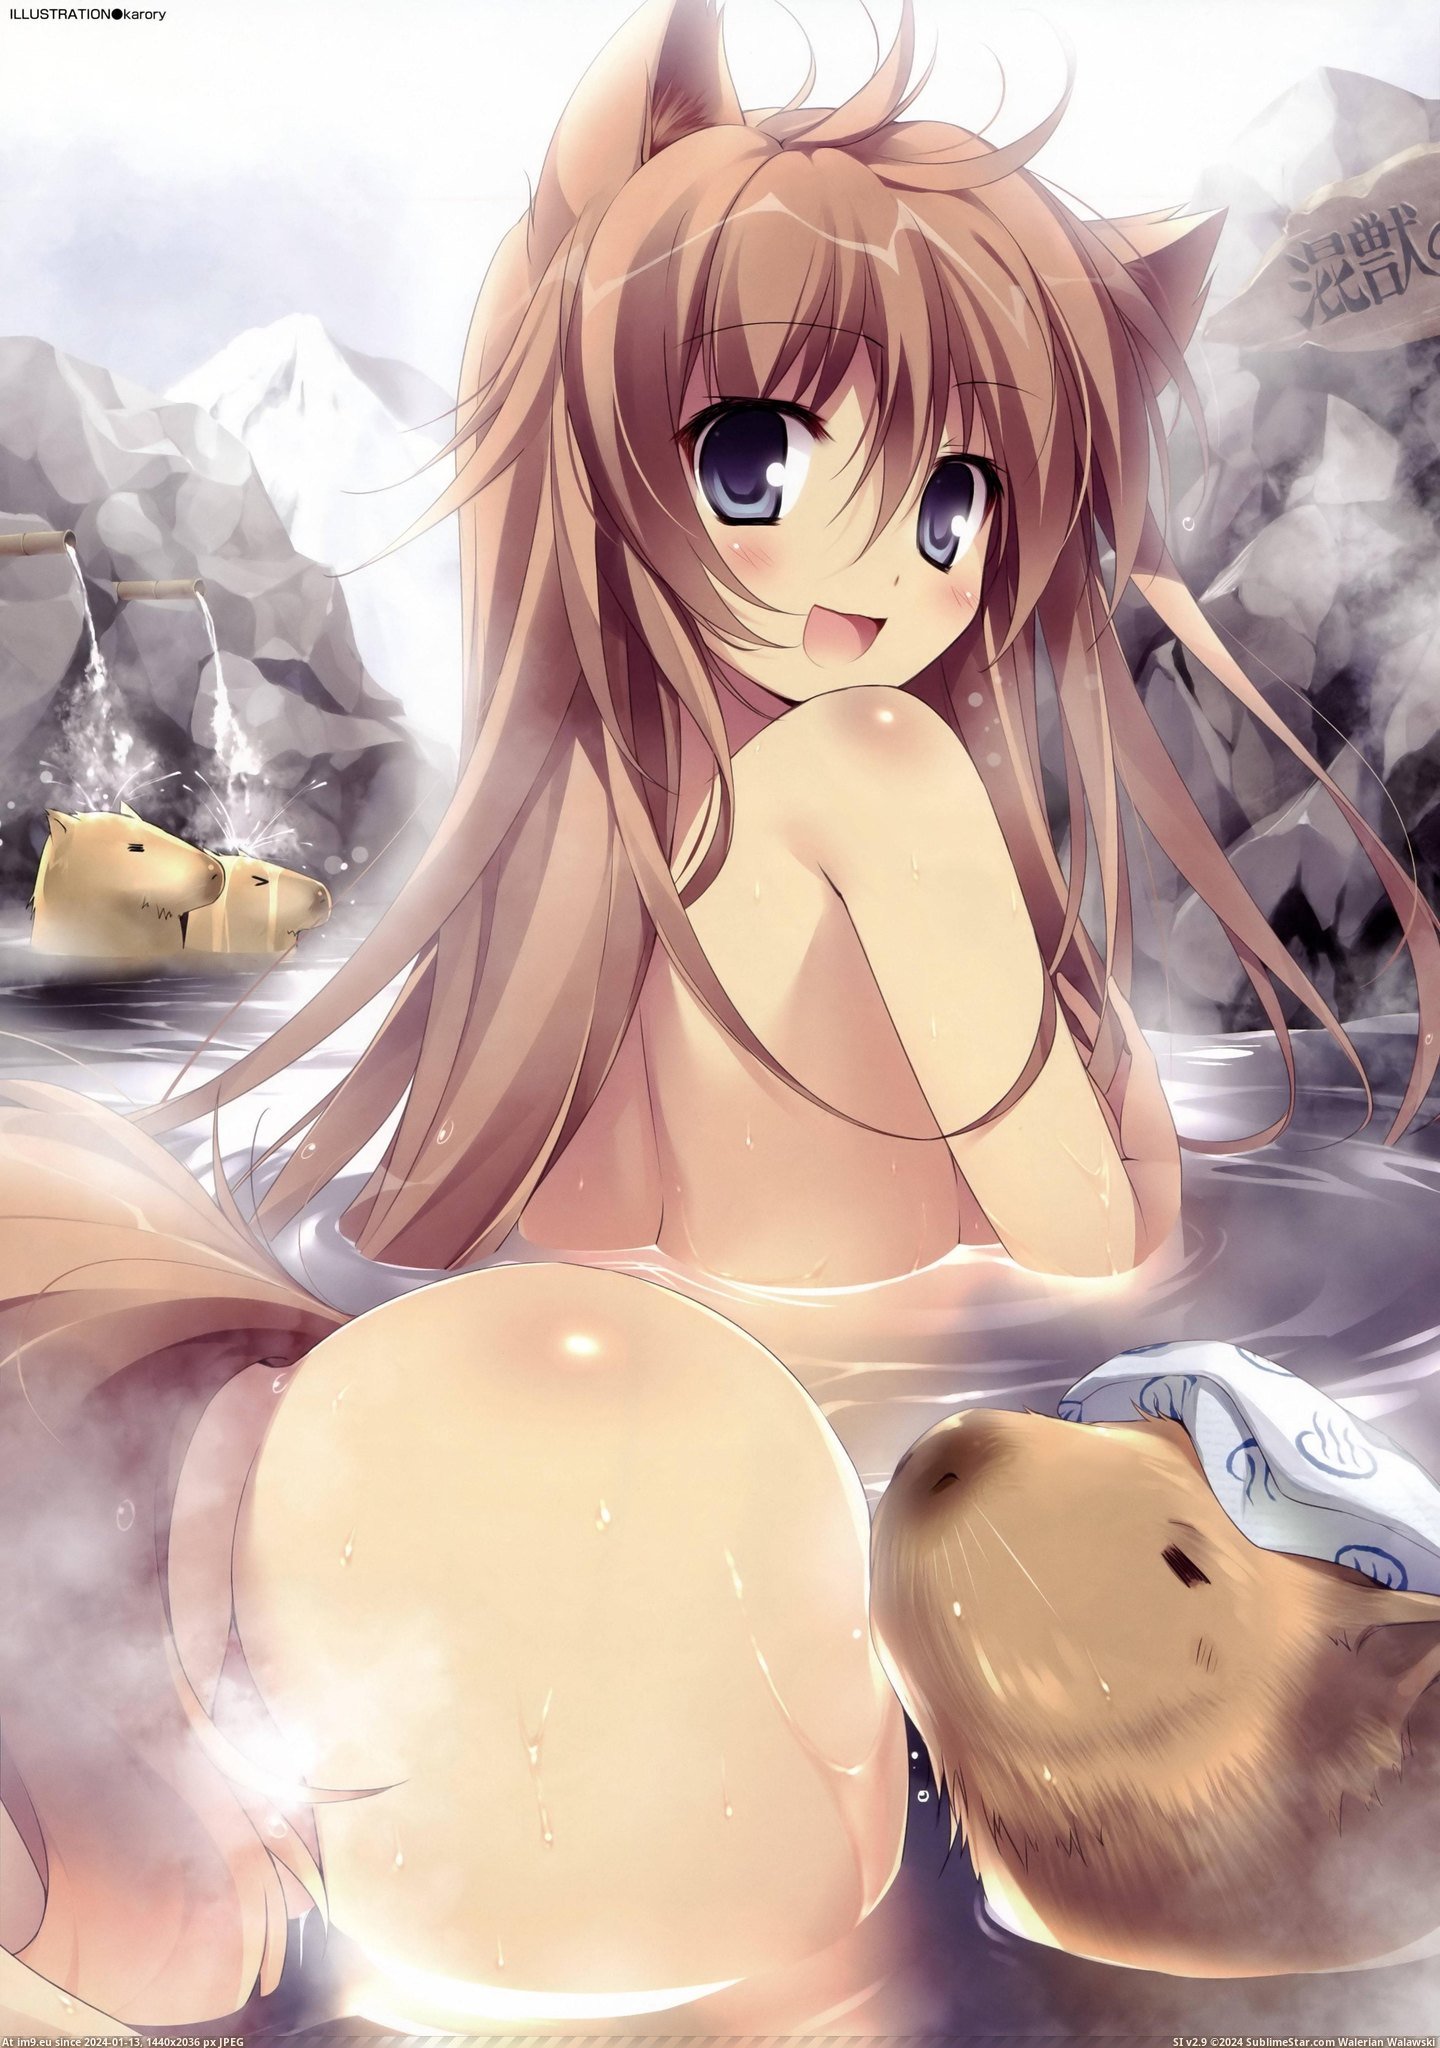 #Hentai #Ecchi #Capybaras #Girl [Hentai] 1 Girl 3 Capybaras [ecchi] Pic. (Image of album My r/HENTAI favs))